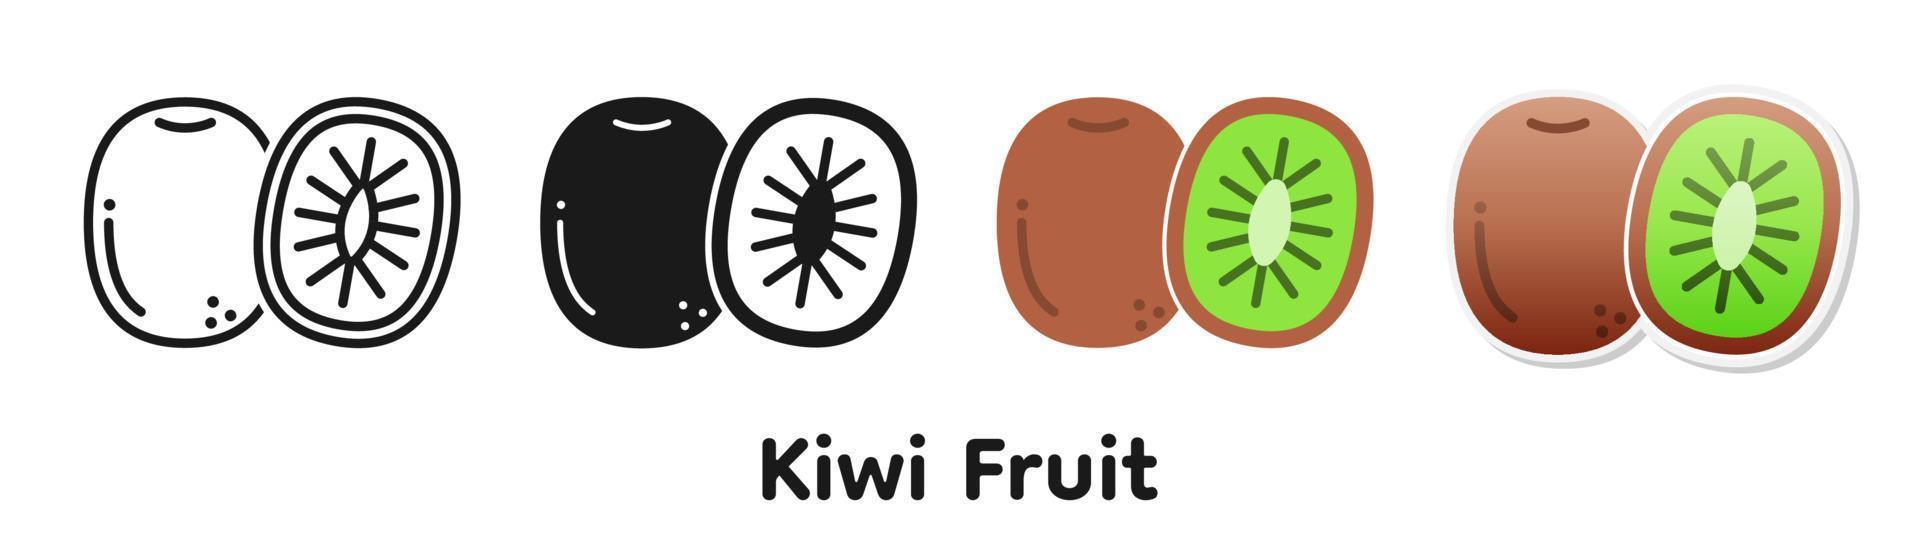 vektor ikonuppsättning av kiwi.